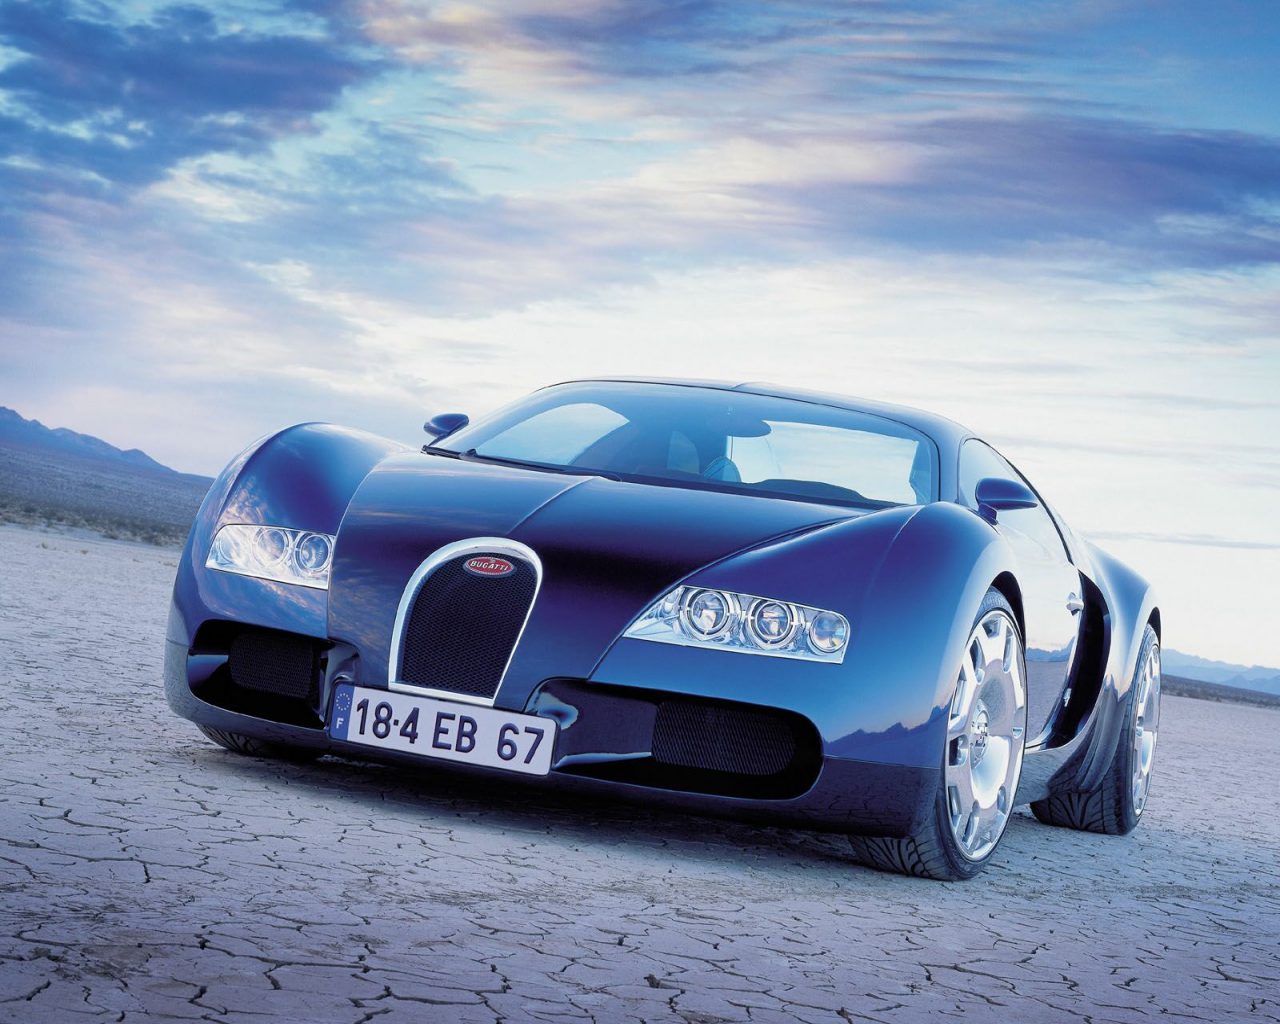 Wallpaper De Bugatti Veyron A Fotos E Imagenes